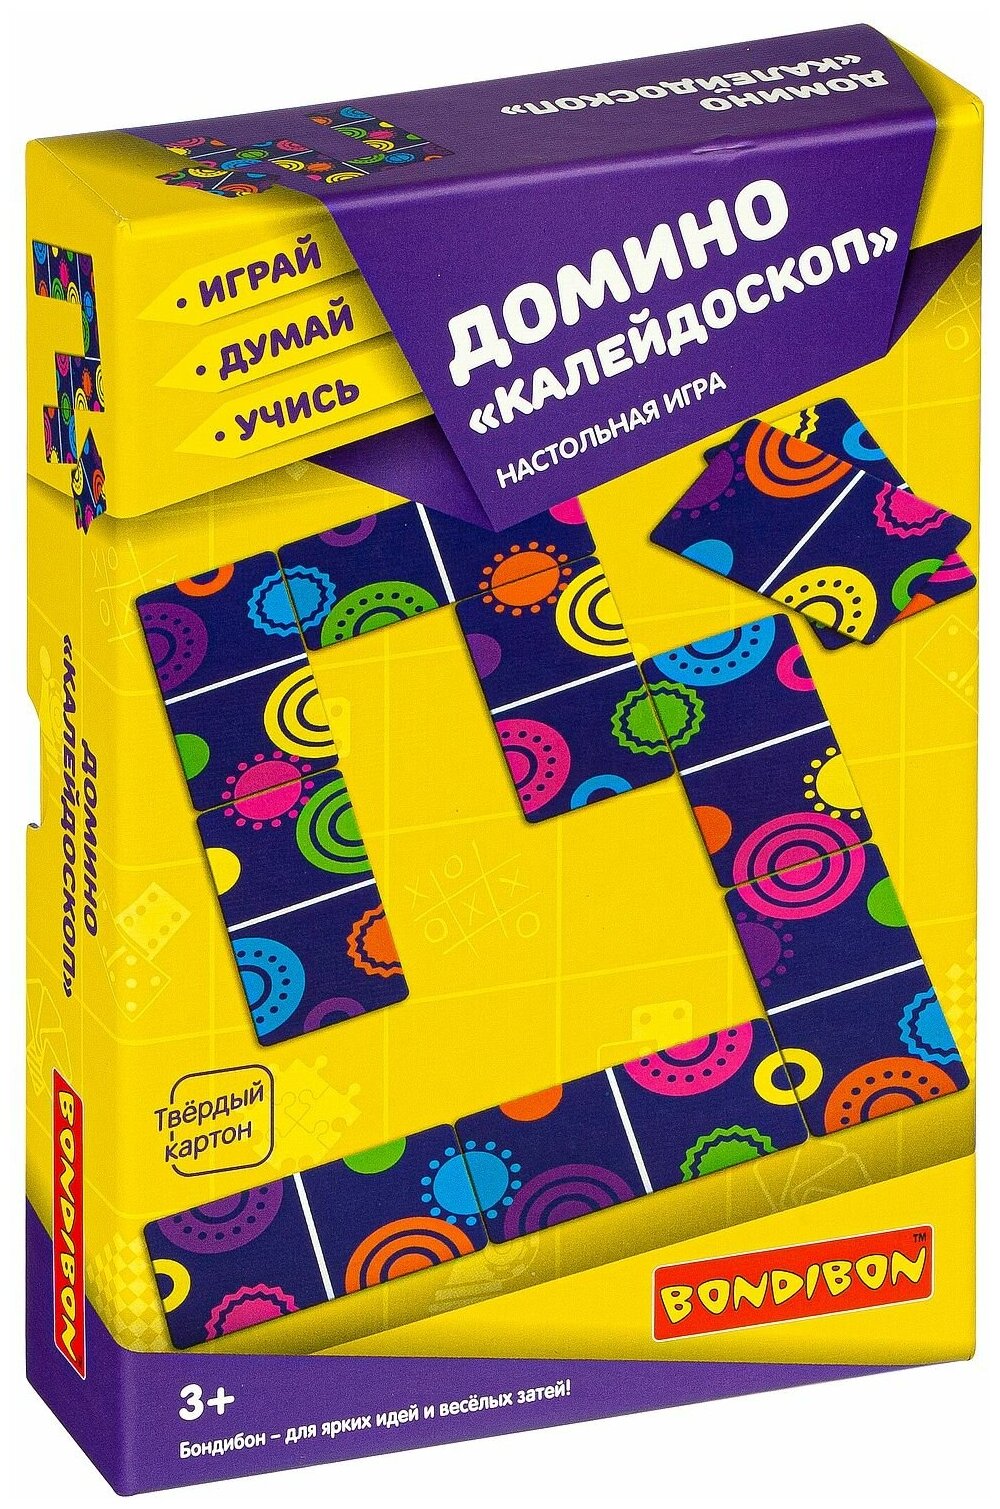 Домино "Калейдоскоп"-настольная игра BONDIBON.